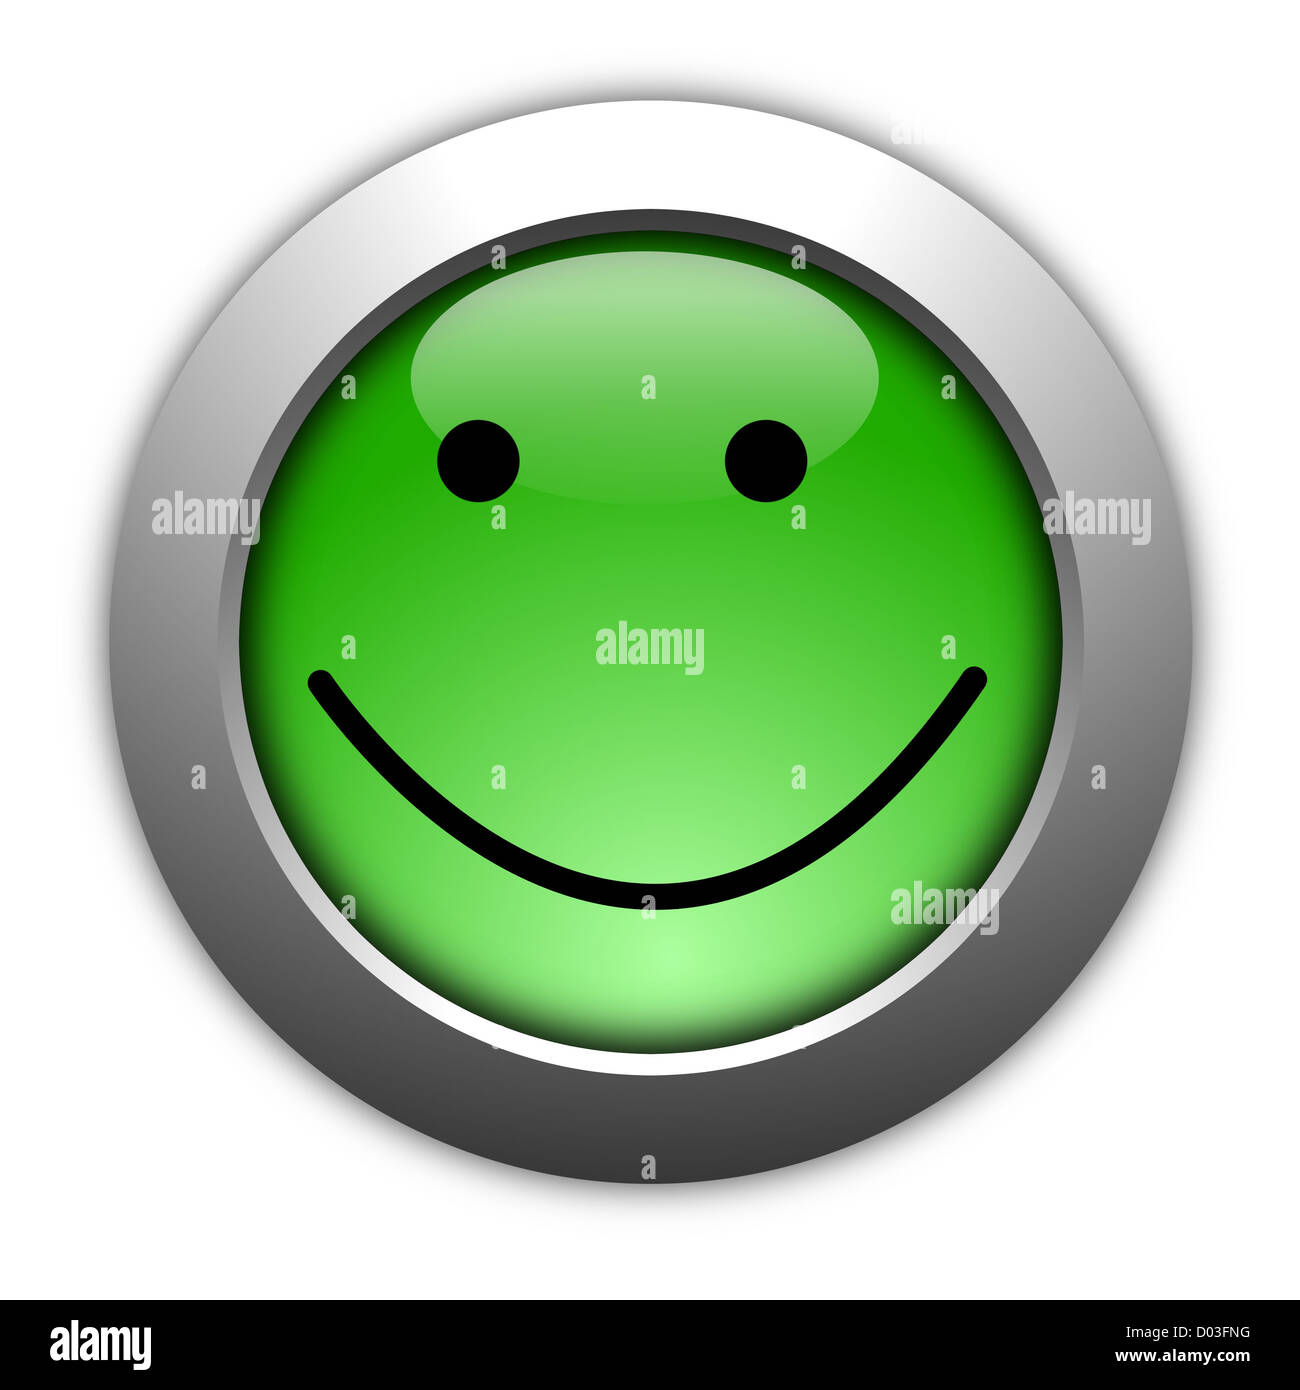 Enquête de satisfaction client concept avec smilie et bouton Banque D'Images